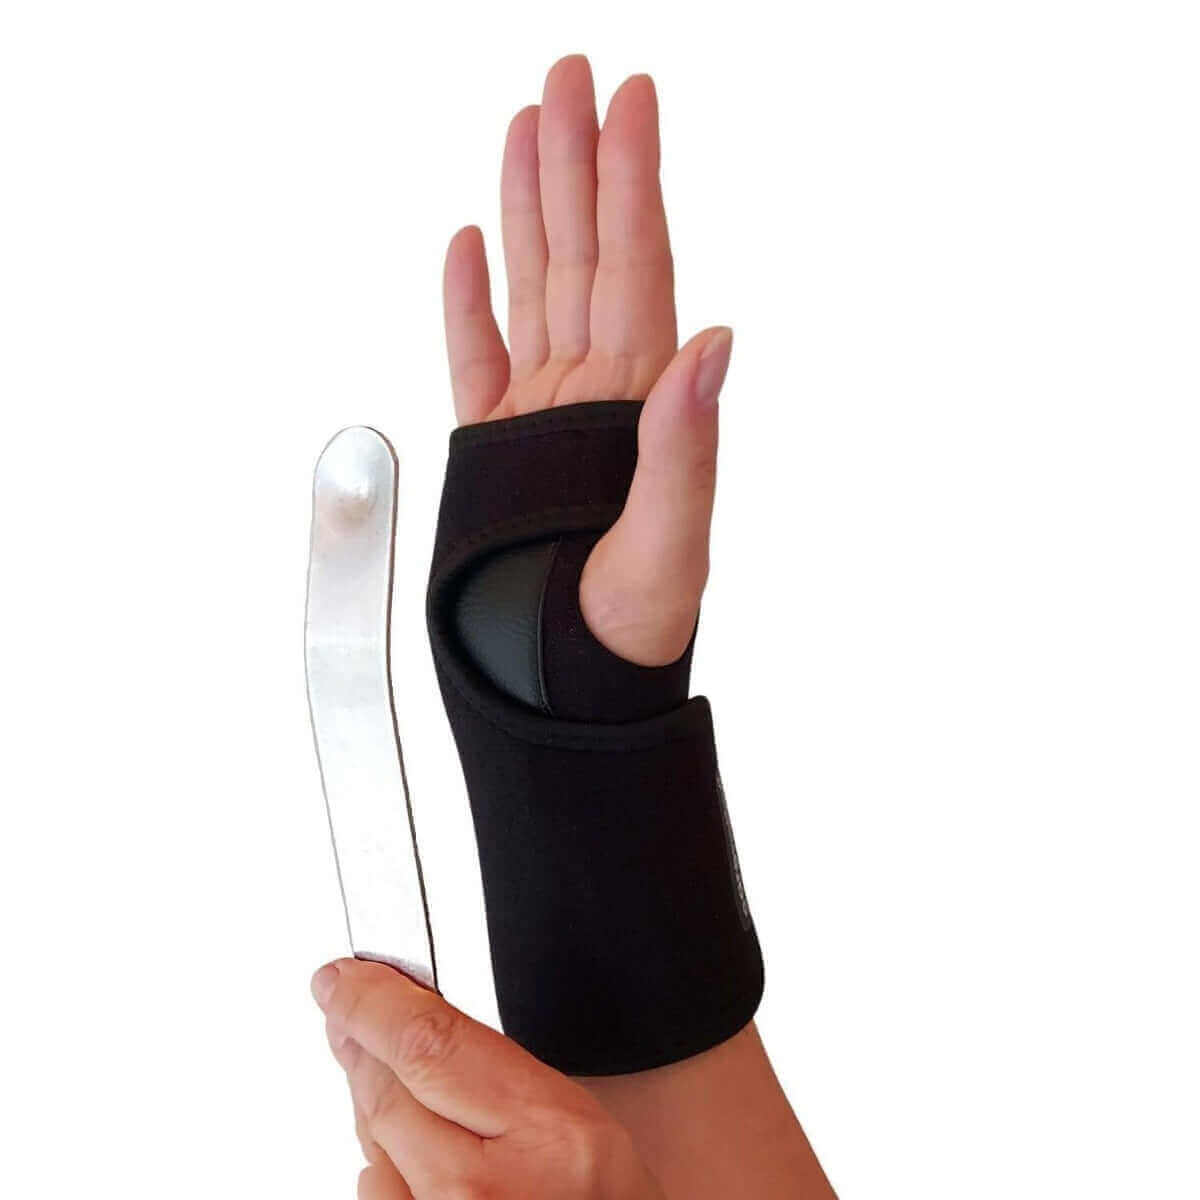 Håndledsstøtte med skinne fjerner smerter og behandler skader i håndleddet. Køb justerbar håndledsbandage med ergonomisk skinne HL20 hos Carerelief.dk.